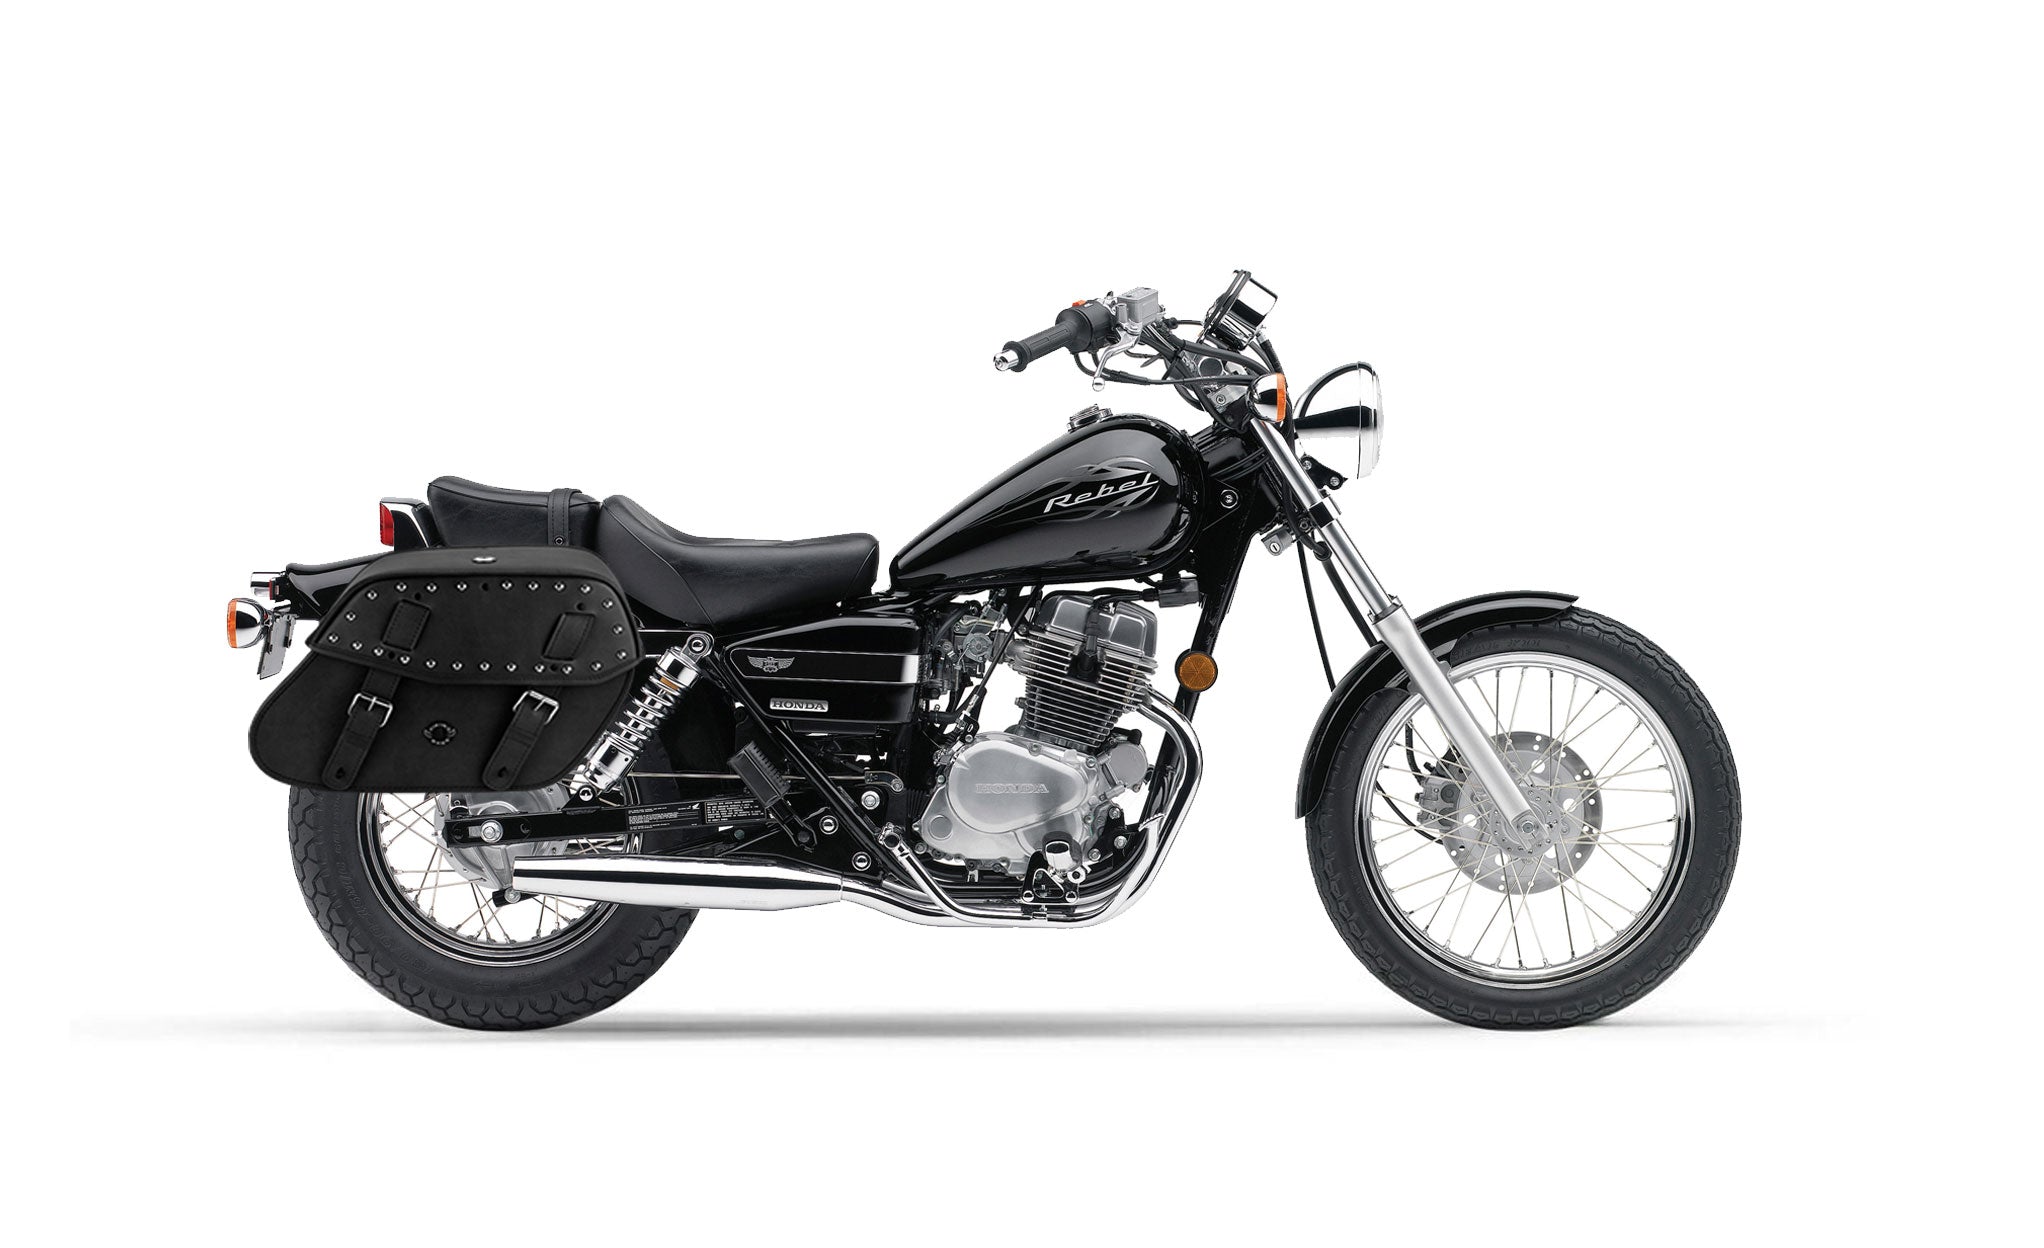 Viking Odin Large Honda Rebel 250 Cmx250C Studded Leather Motorcycle Saddlebags on Bike Photo @expand